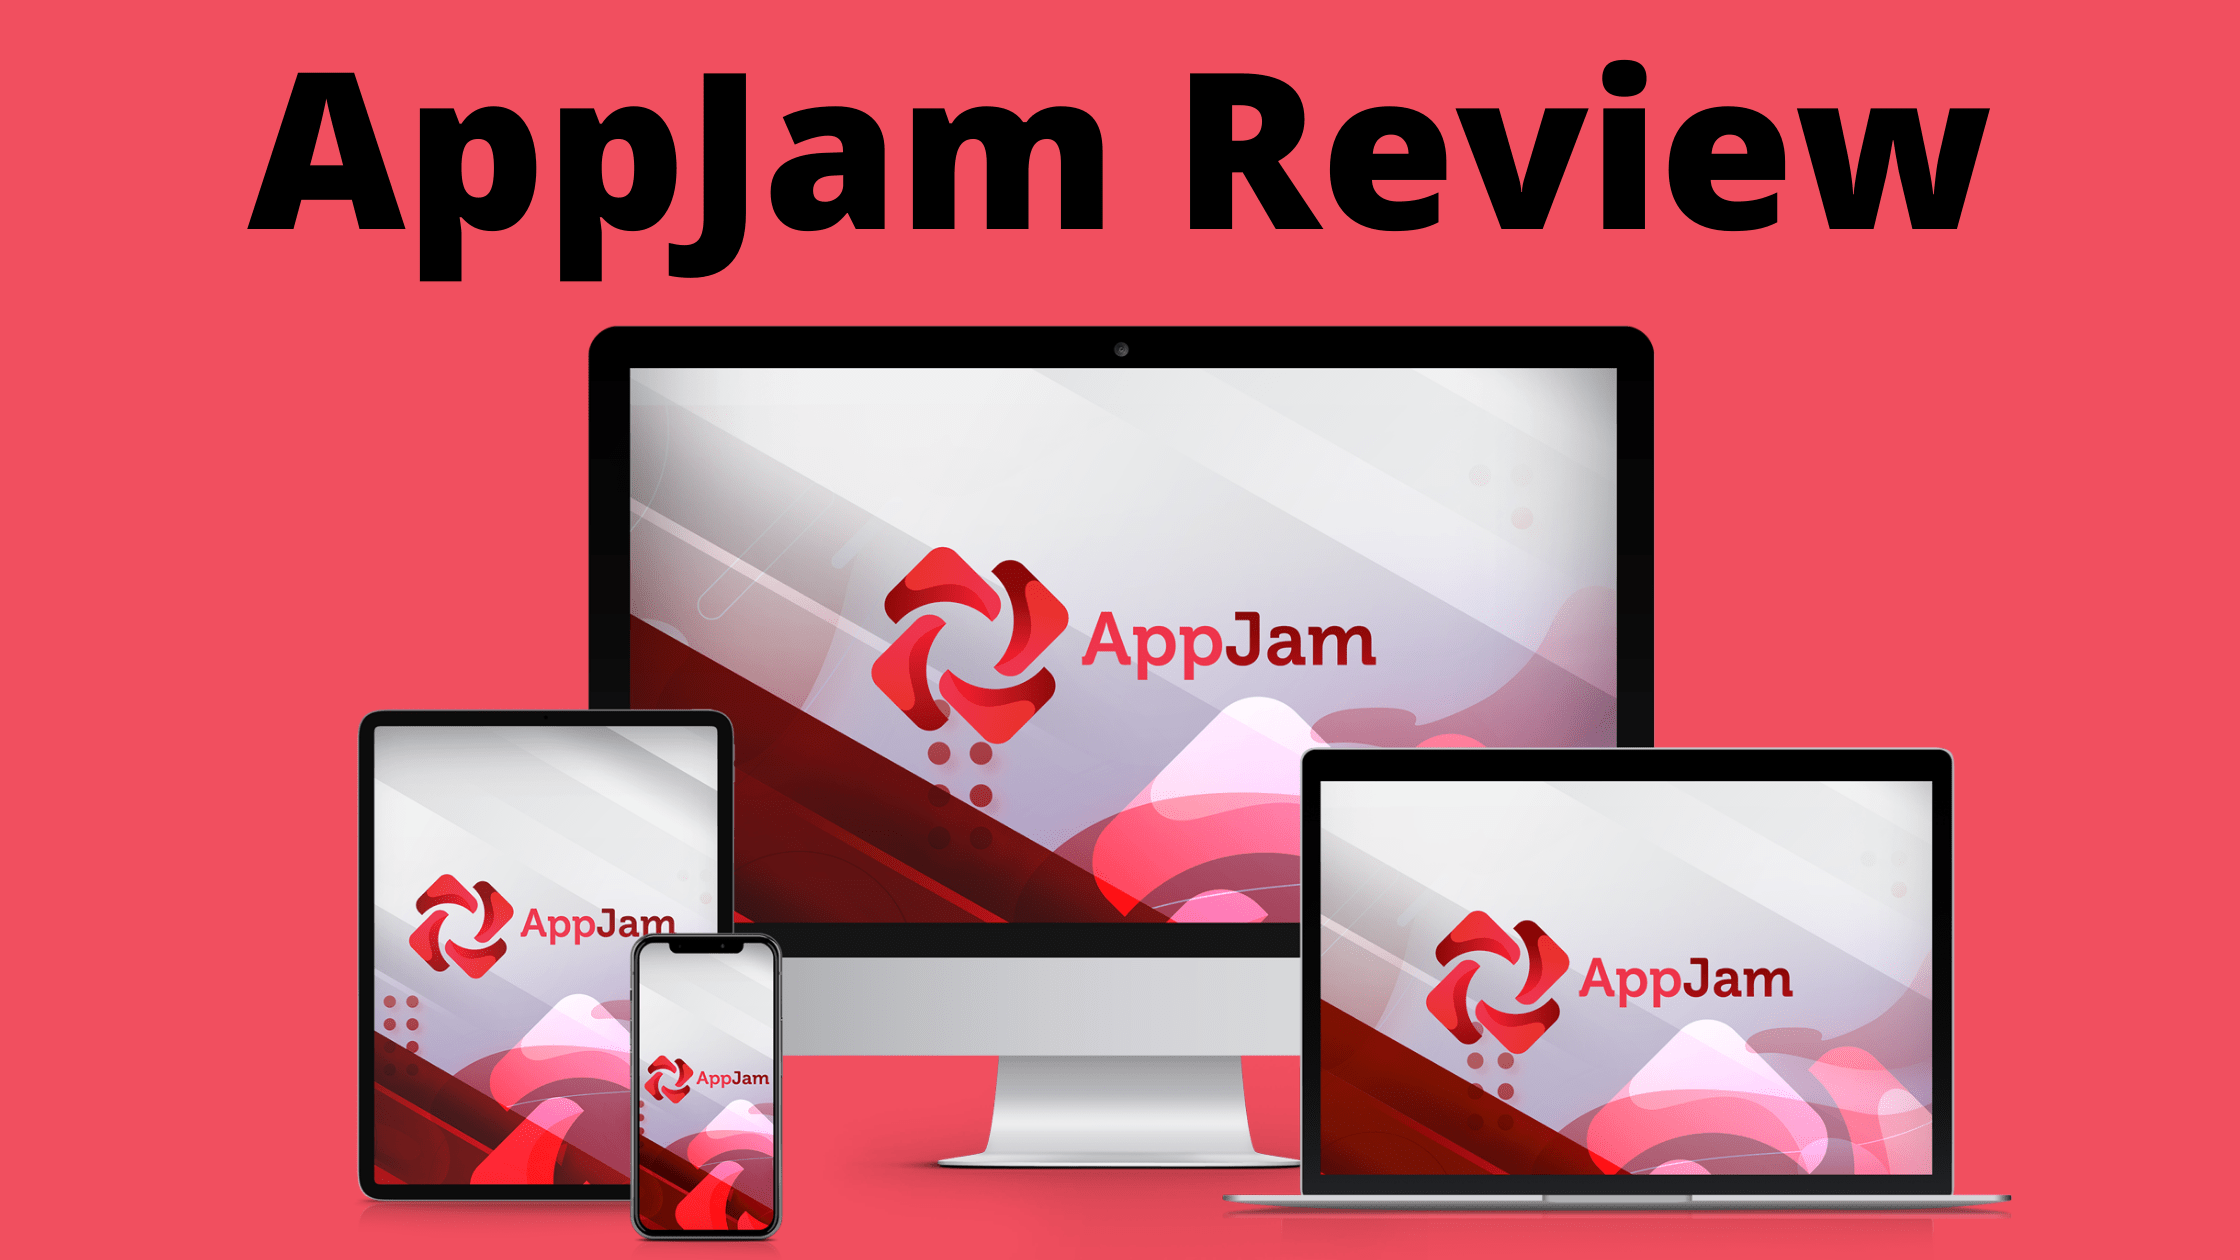 AppJam Review